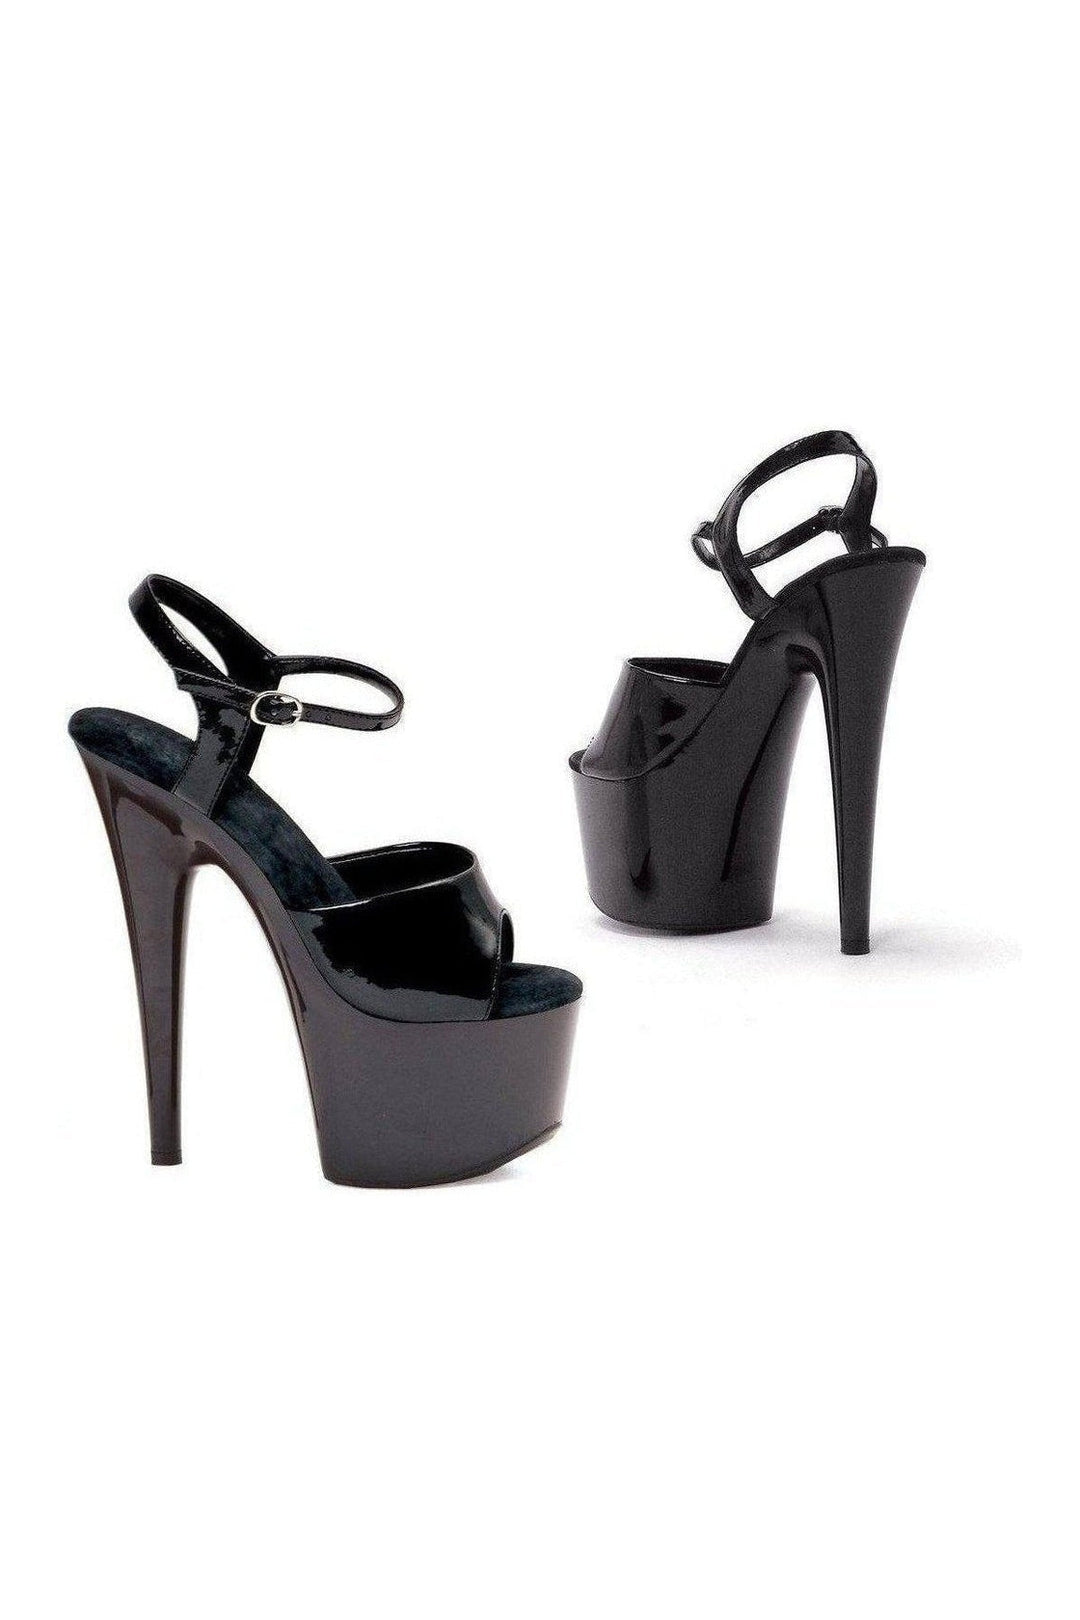 709-JULIET Platform Sandal | Black Patent-Ellie Shoes-SEXYSHOES.COM